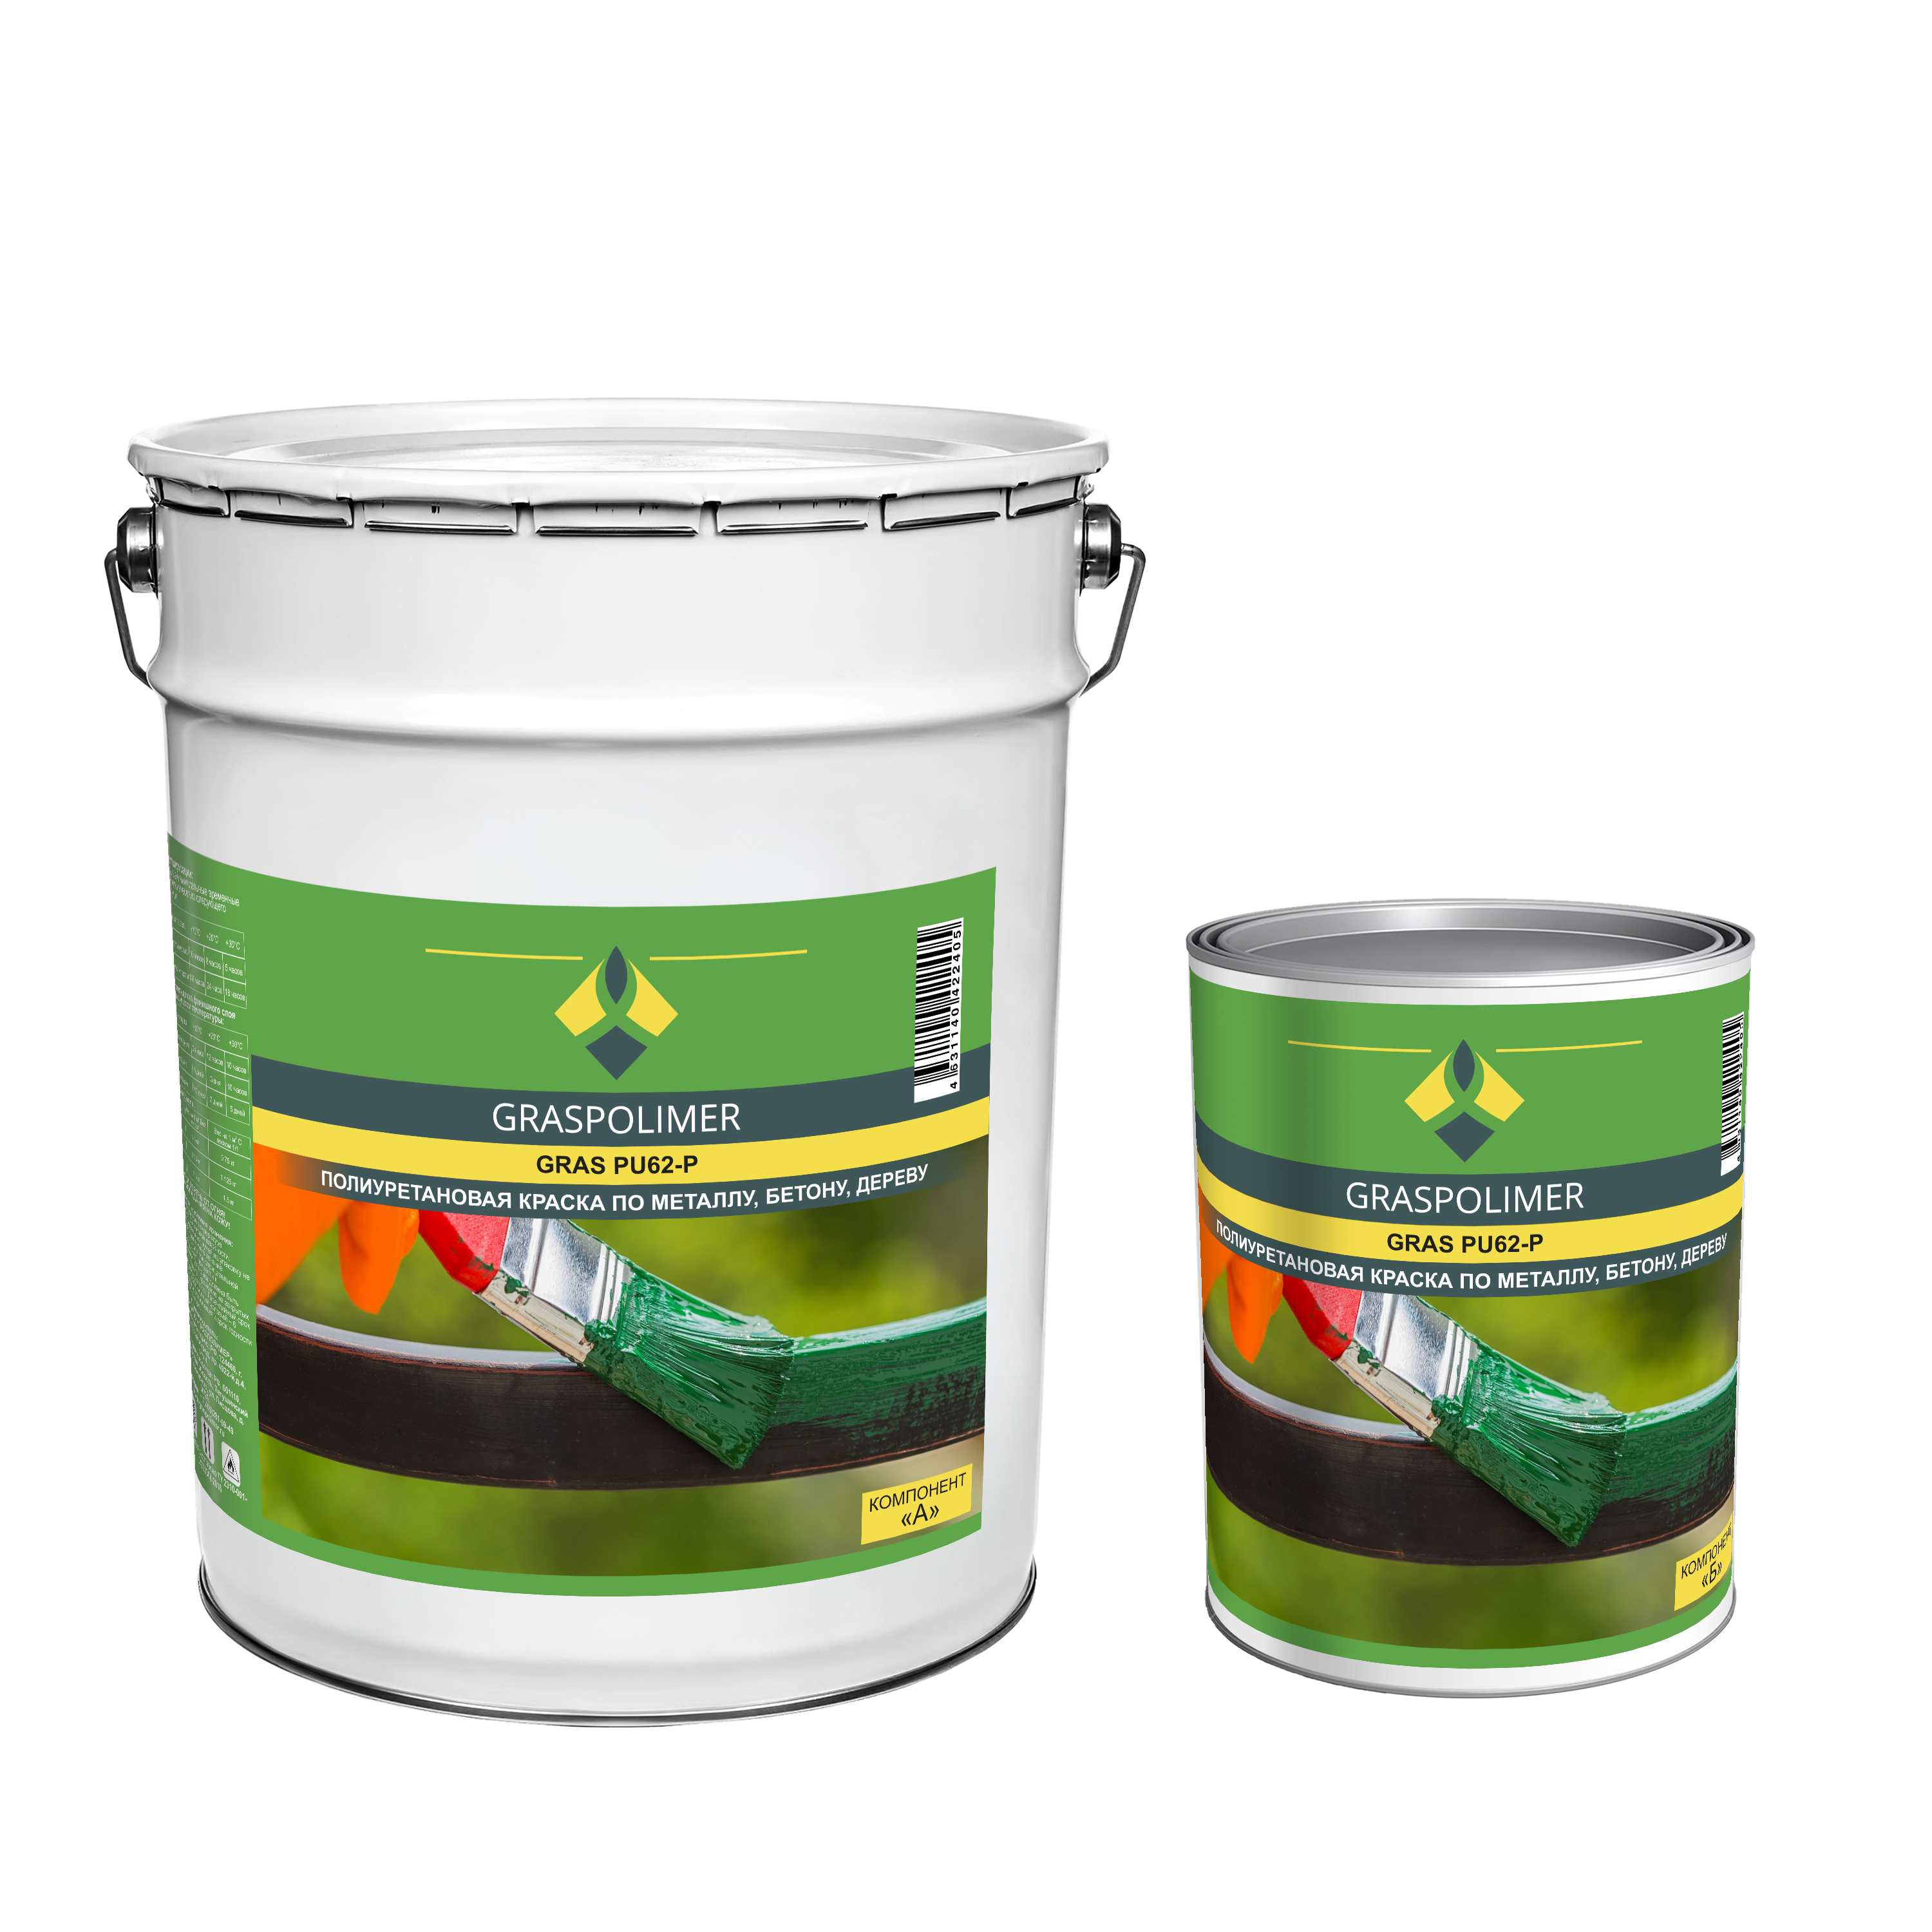 Двухкомпонентная полиуретановая краска. Применяется для покрытия оснований из металла, бетона и дерева в помещениях. GRASPOLIMER PU63-P, зеленый, Фасовка 25 кг